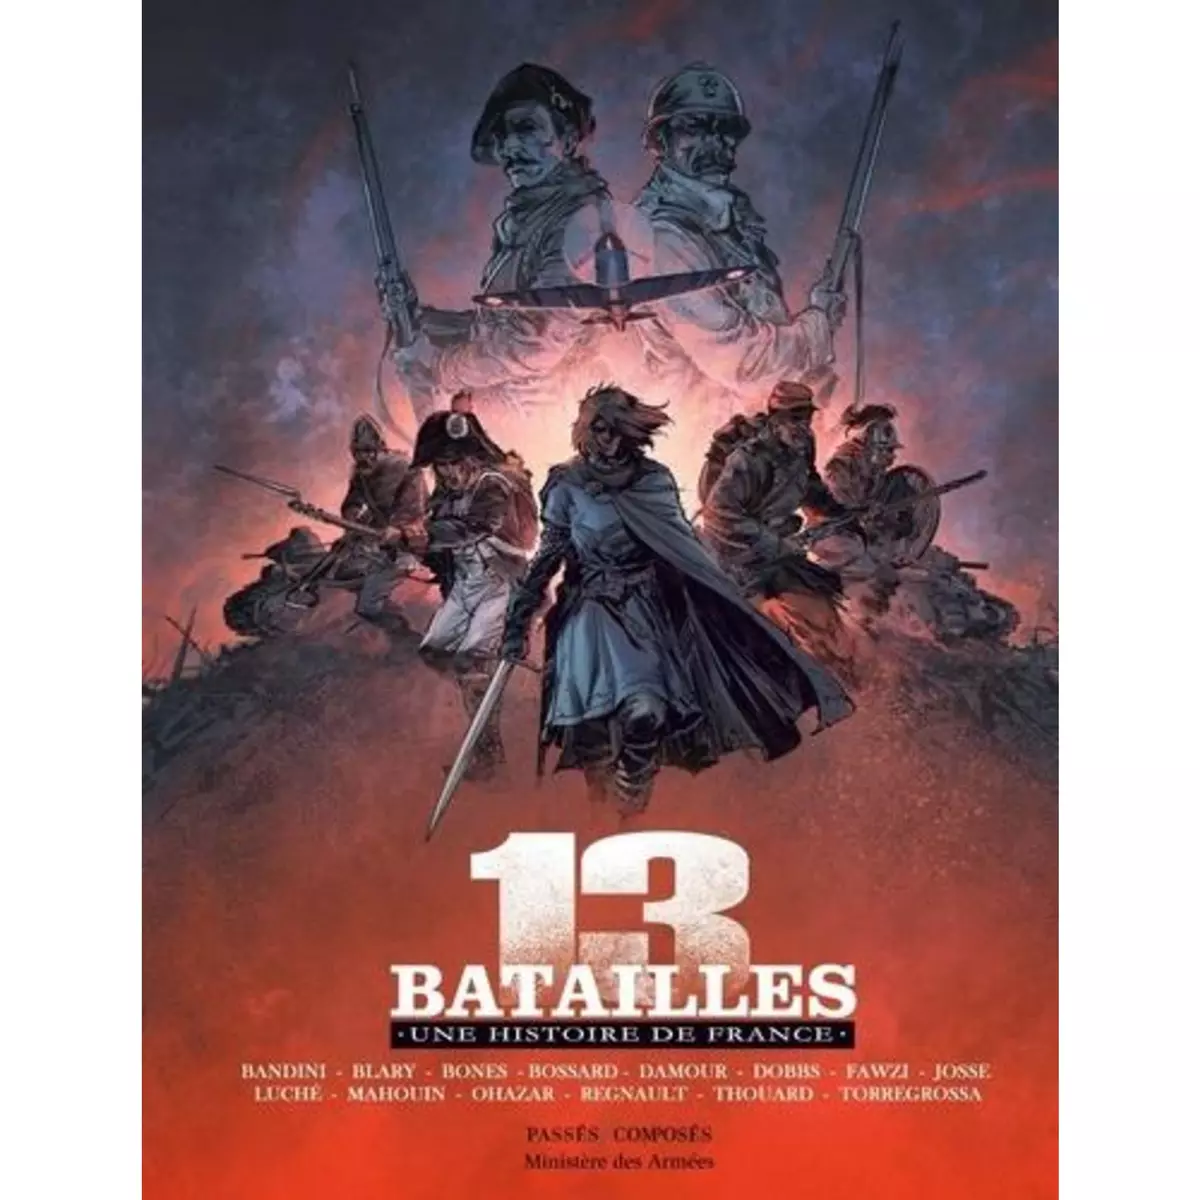  13 BATAILLES. UNE HISTOIRE DE FRANCE, Dobbs